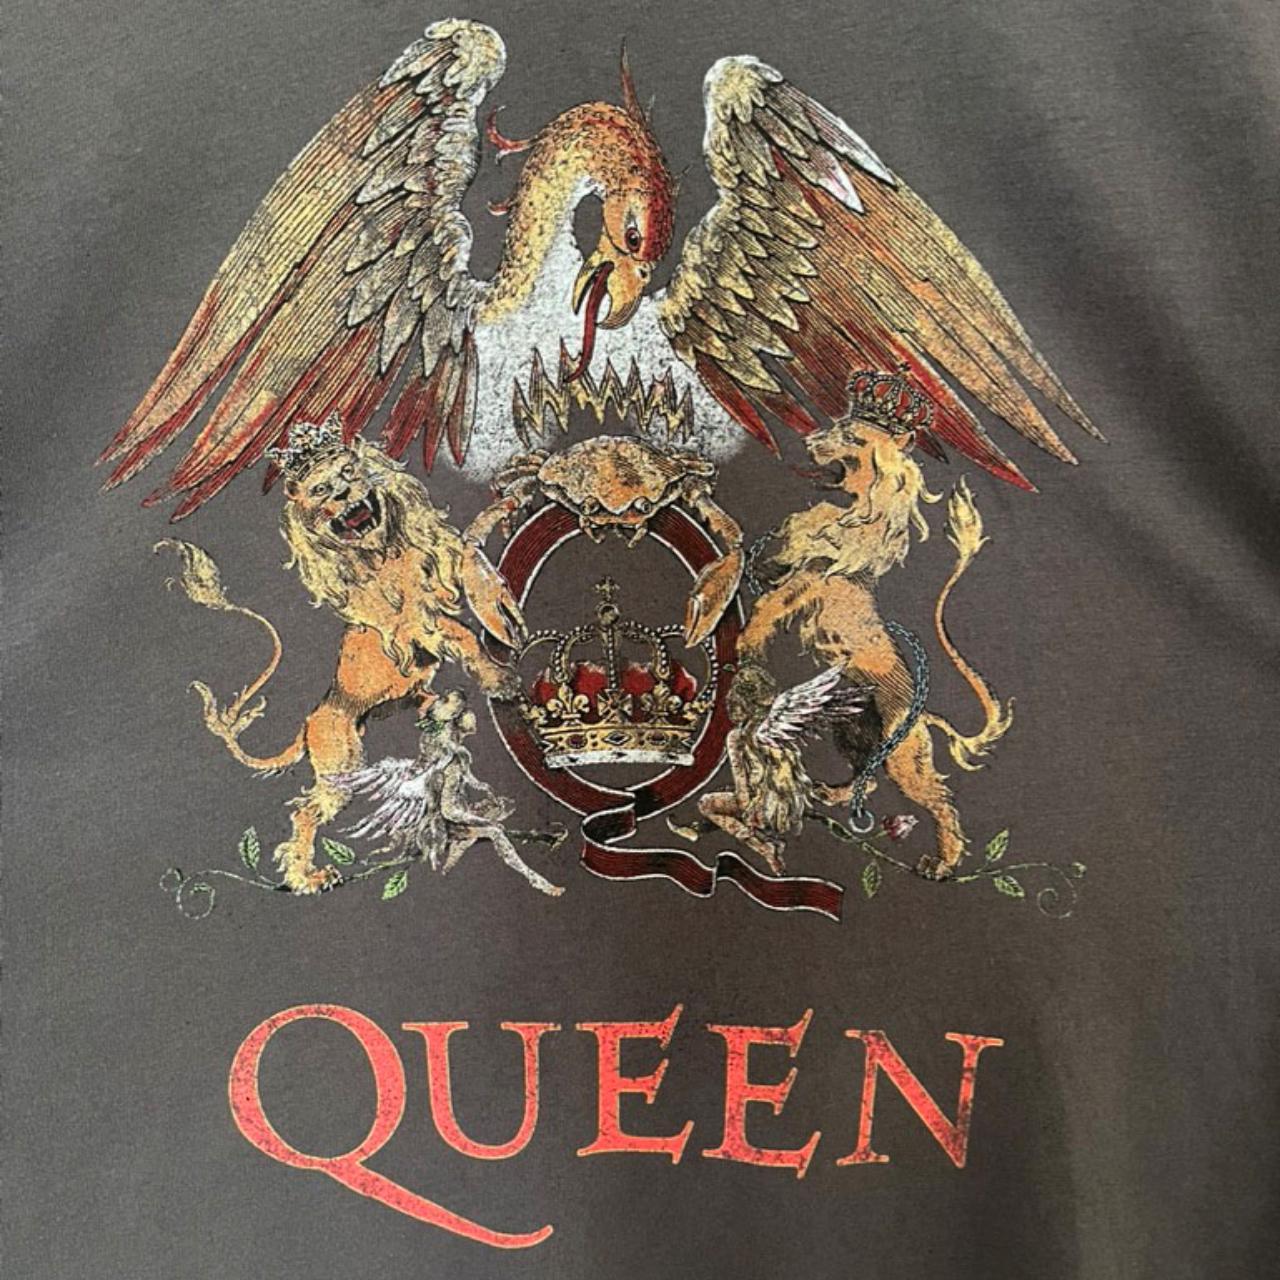 Queen Crest Vintage Amplified Tee - Queen